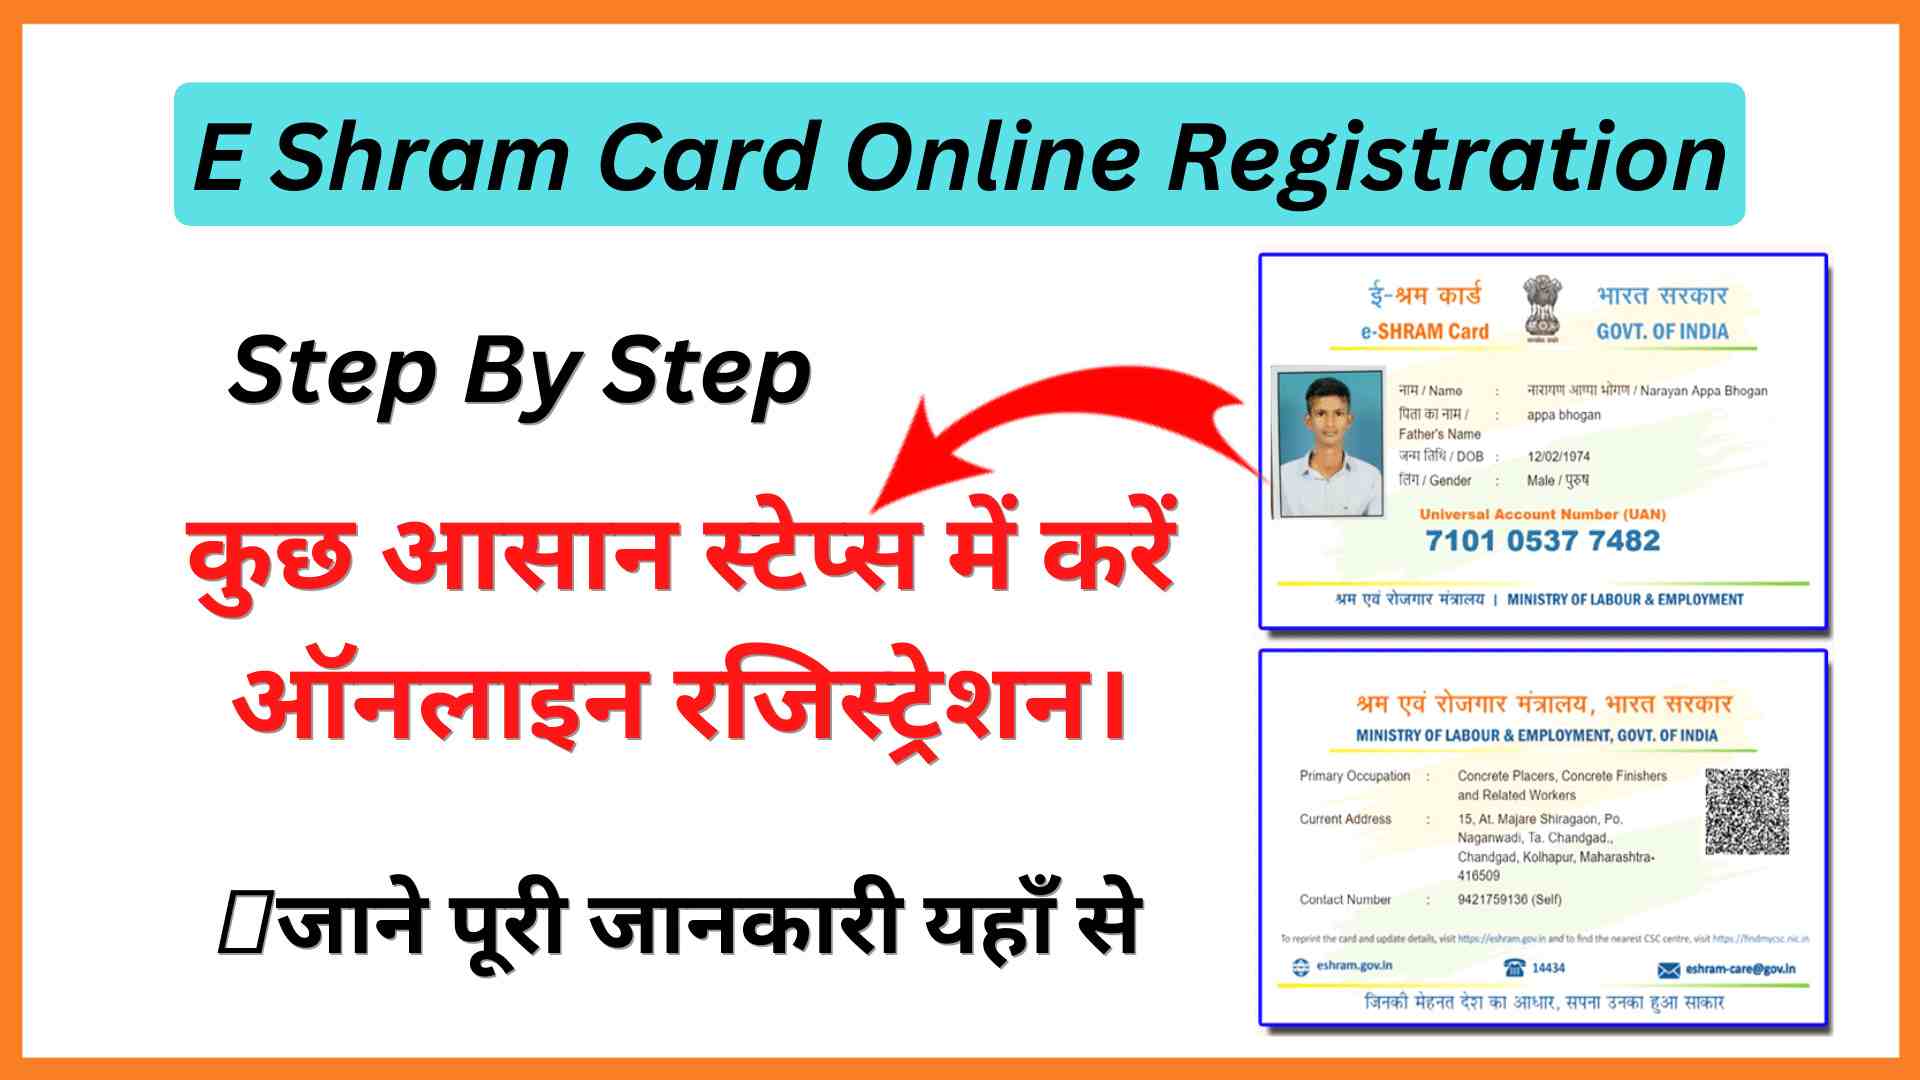 E Shram Card Online Registration Kaise Kare